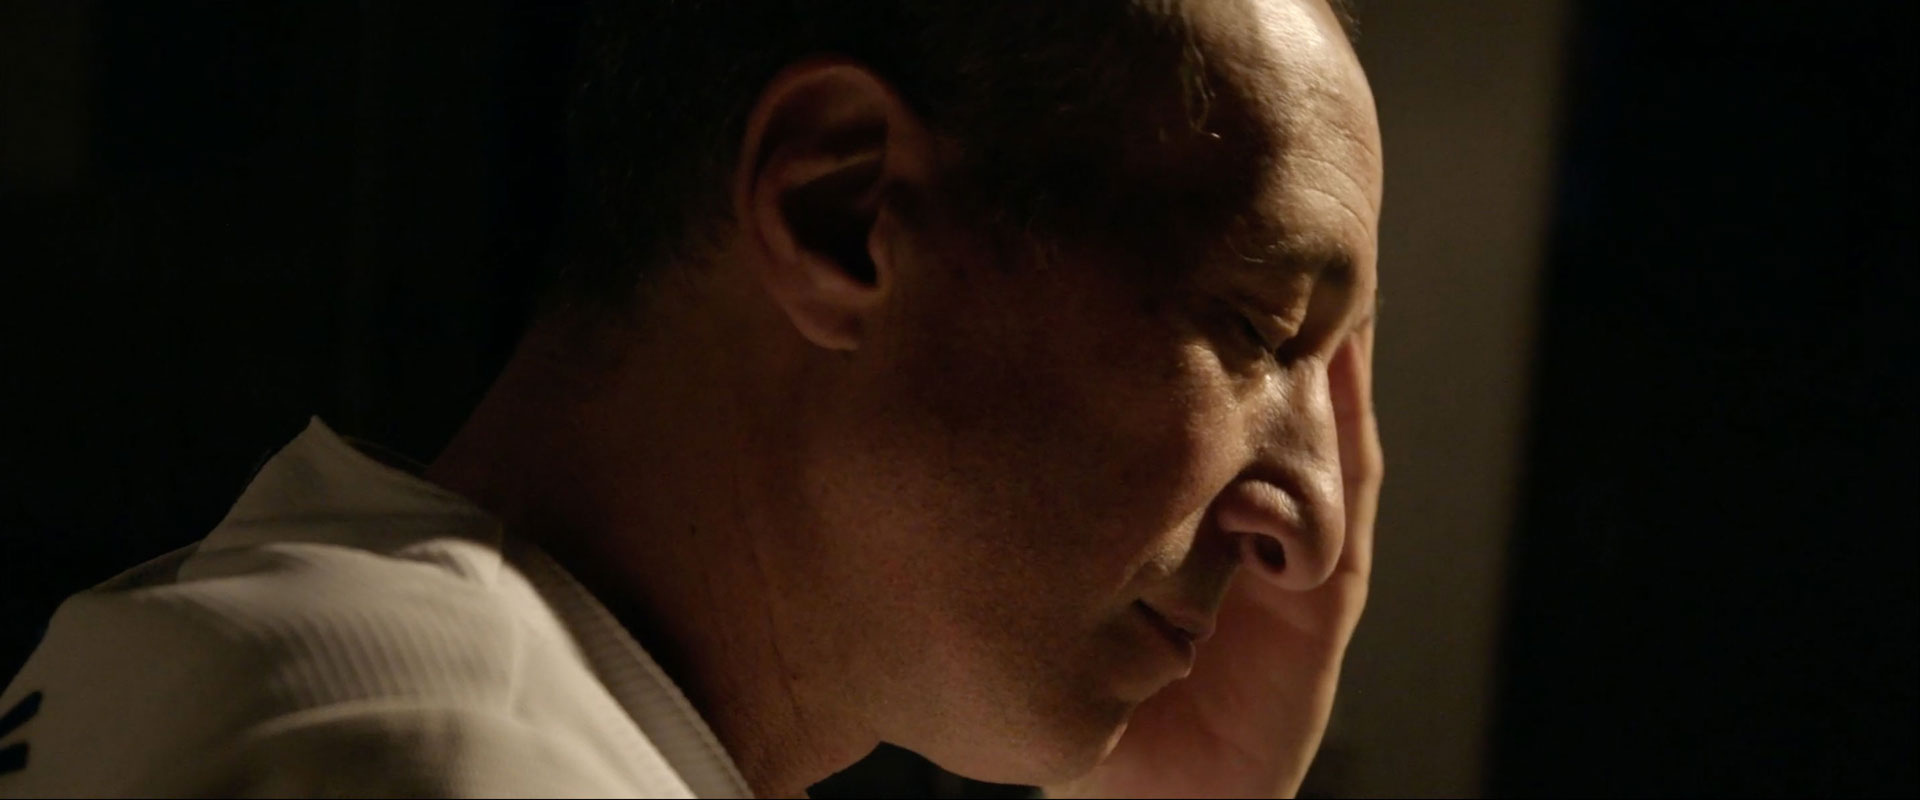 A pensive man (Greg Laemmle) in profile.